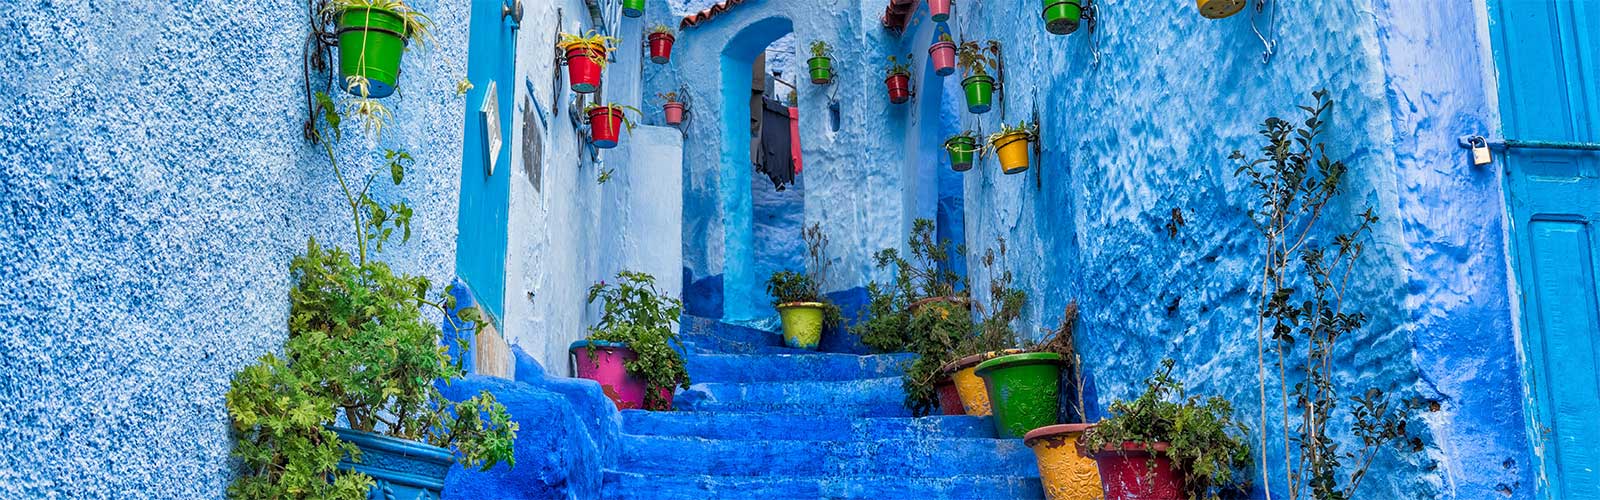 partir au Maroc pour visiter chefchaouen